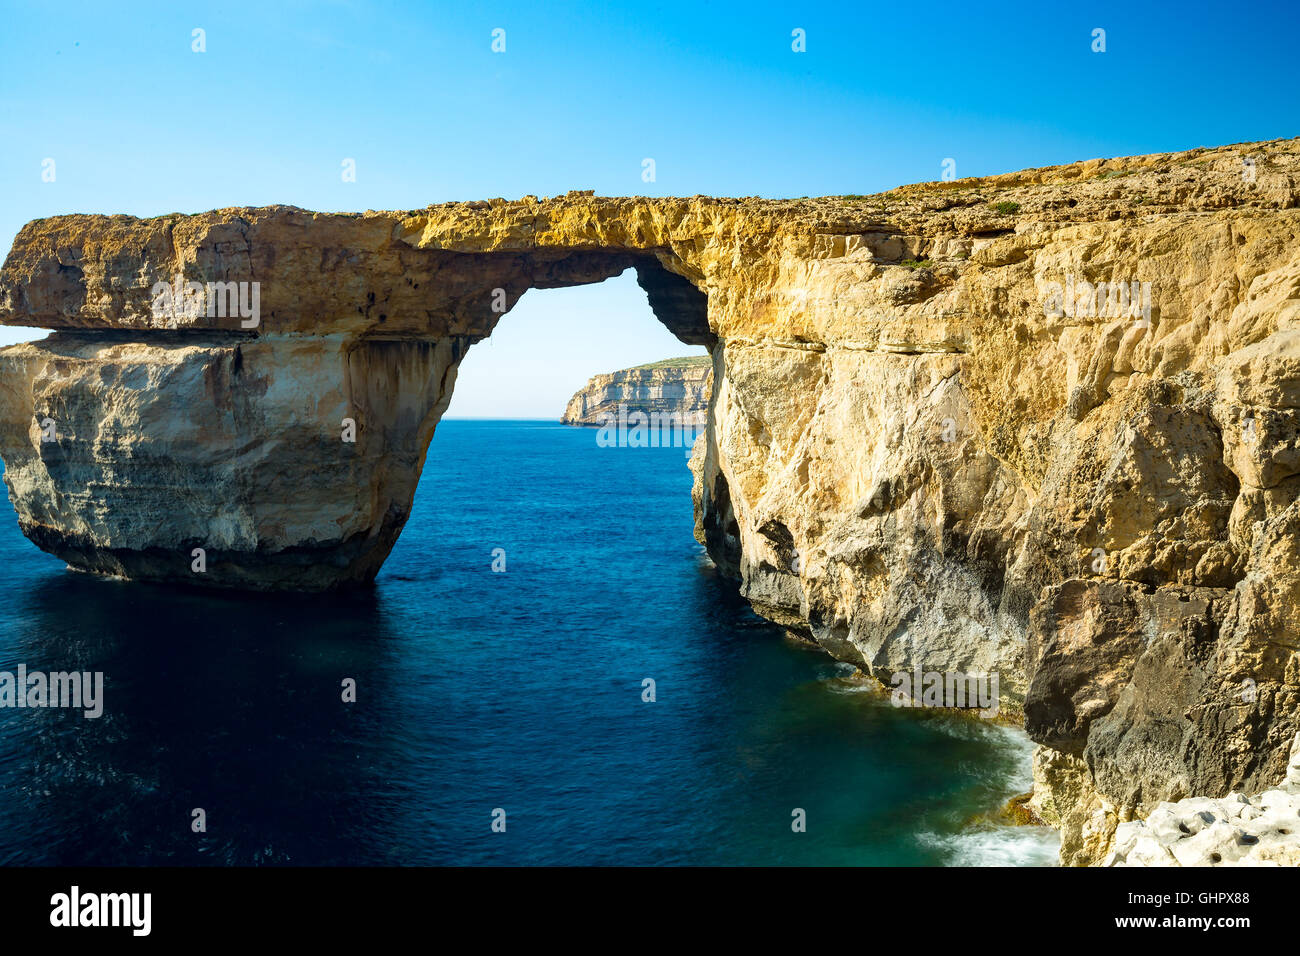 Fenêtre d'azur, arche naturelle, site célèbre et touristique populaire, sur l'île de Gozo, Malte Banque D'Images